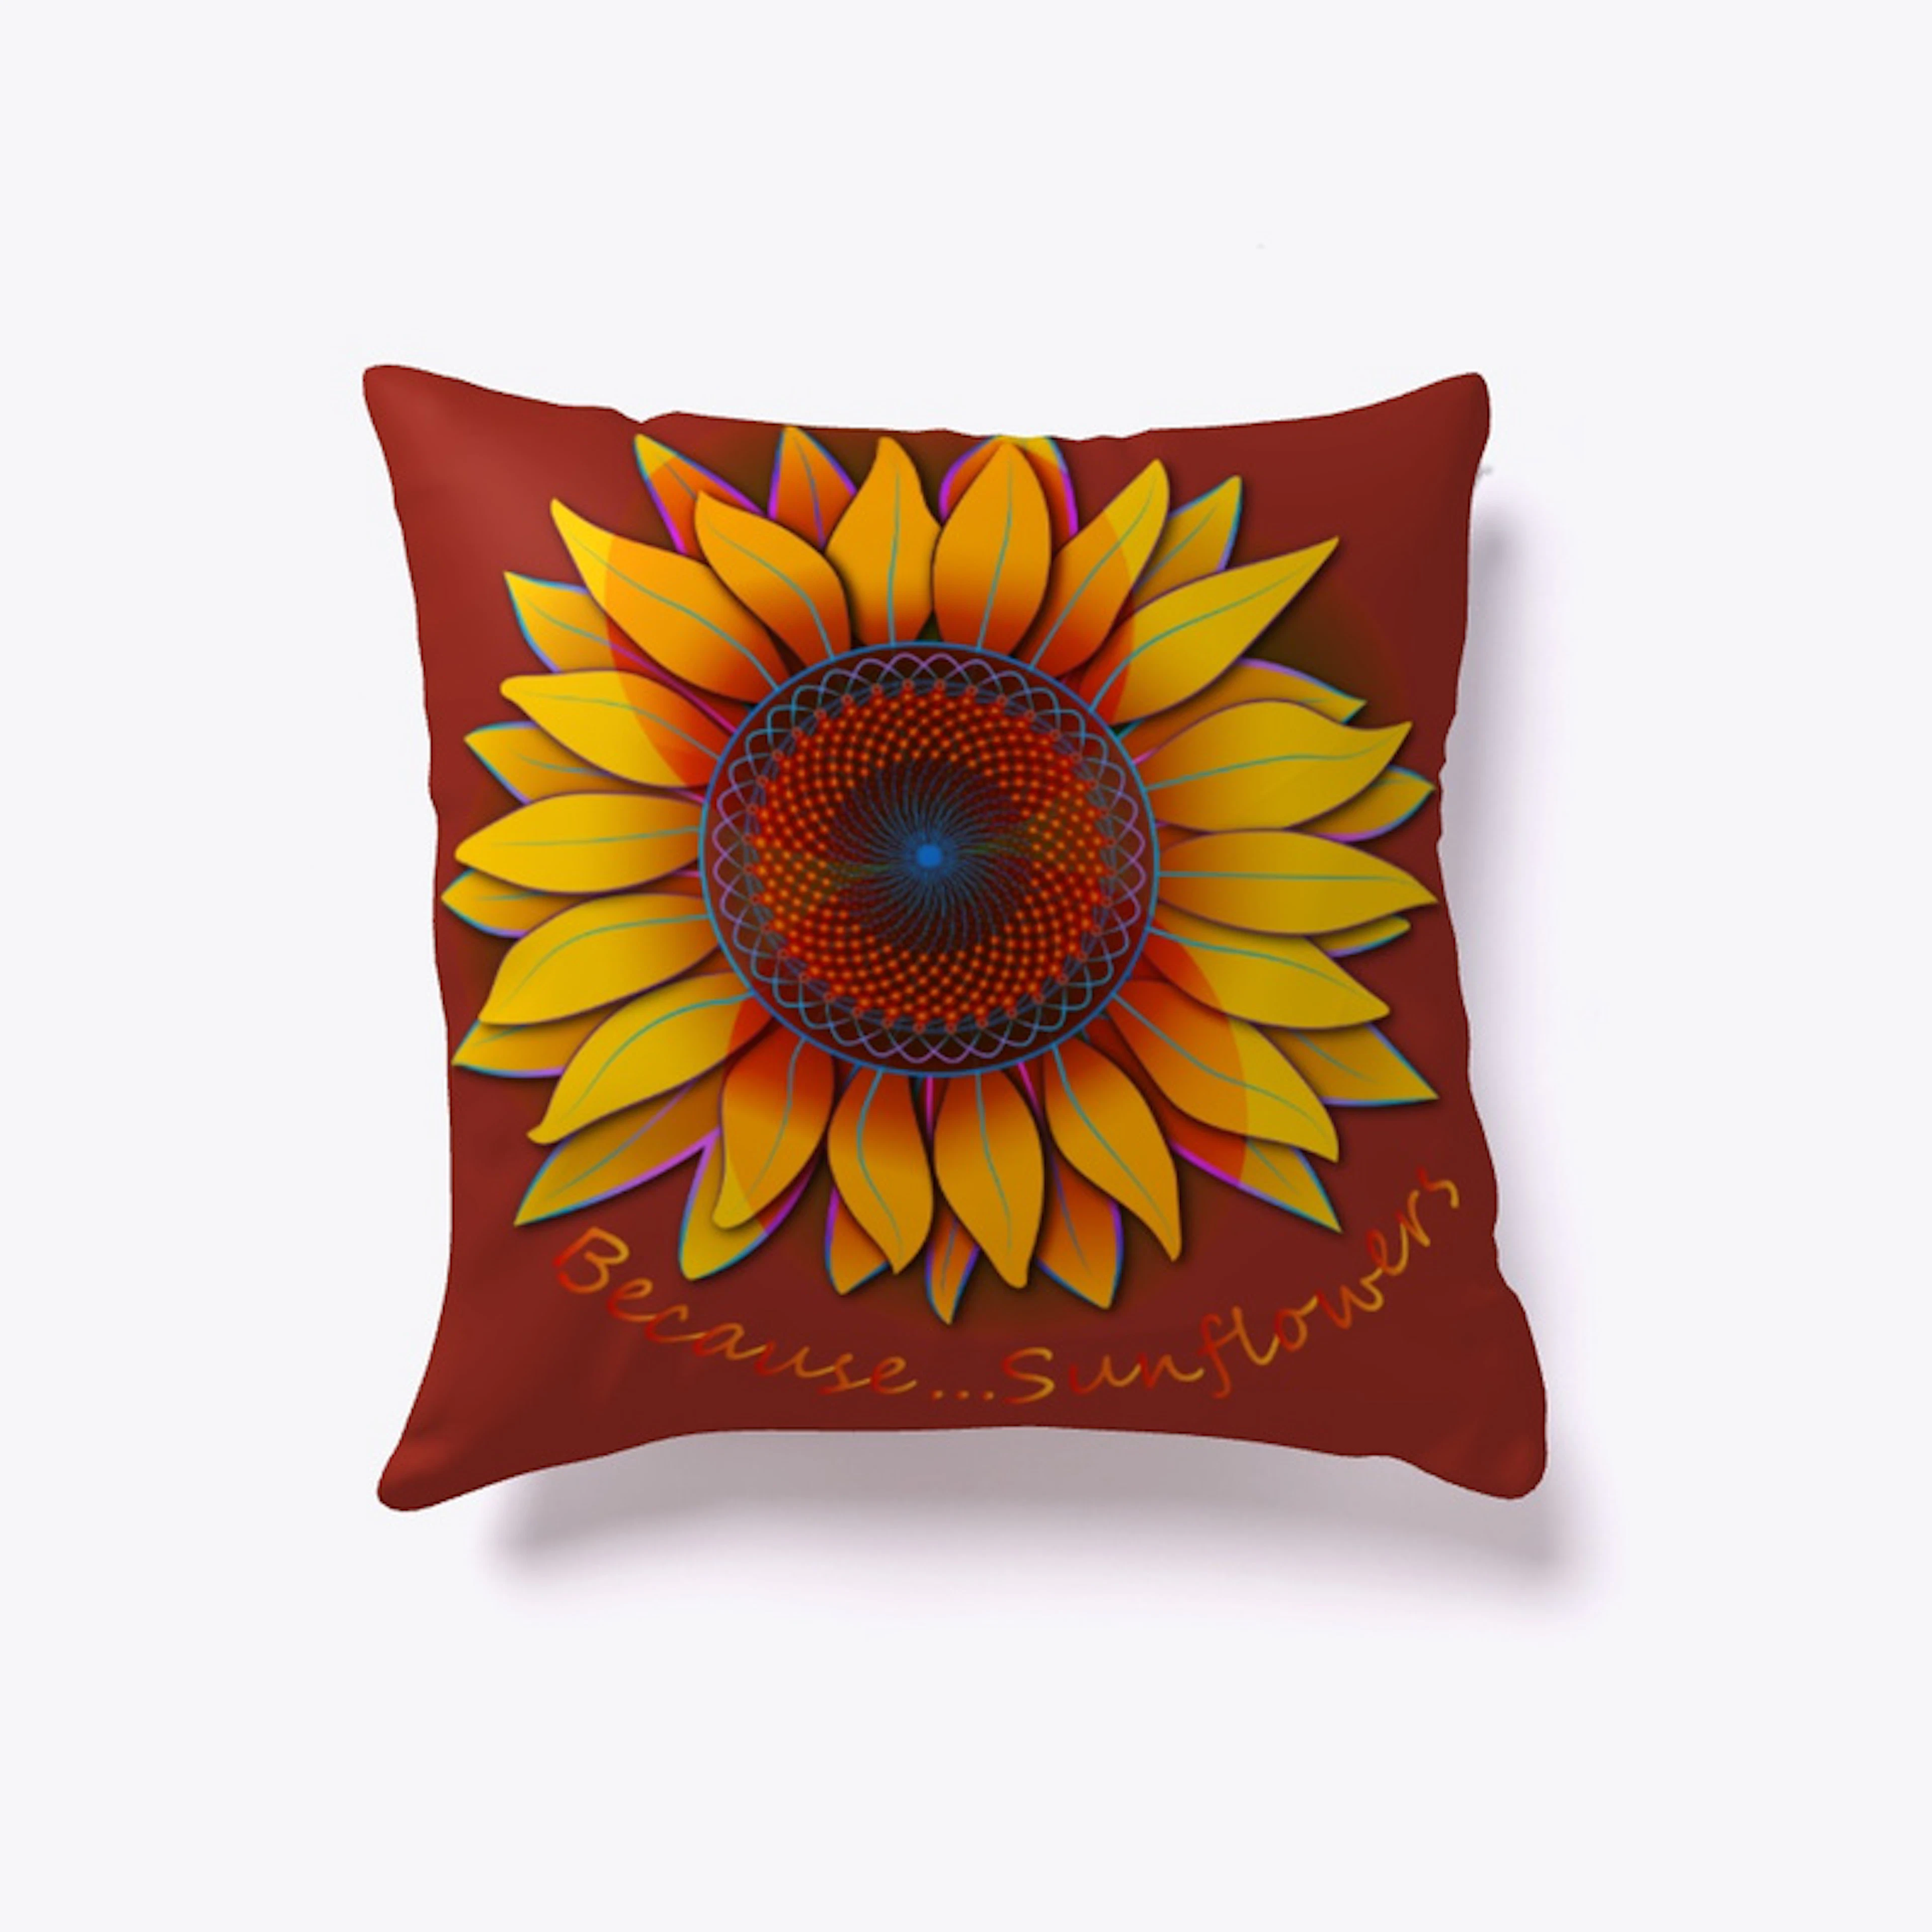 Sunflowers "Trippy Sunflower" Pillow